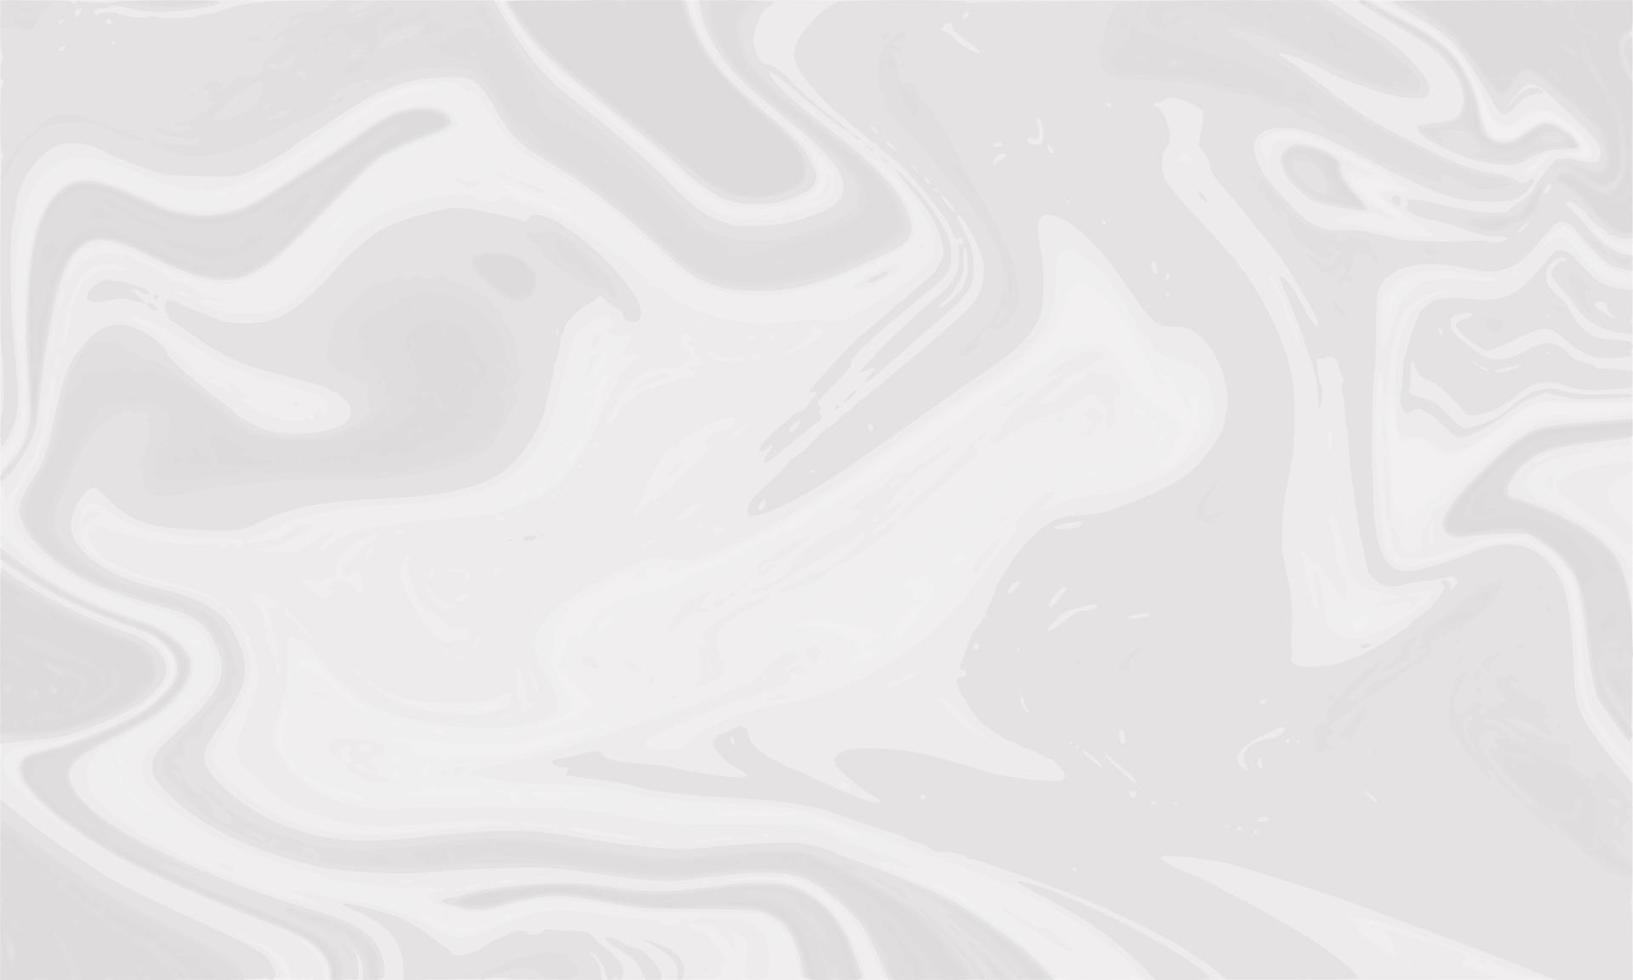 abstracte witte vloeibare marmeren achtergrond vector